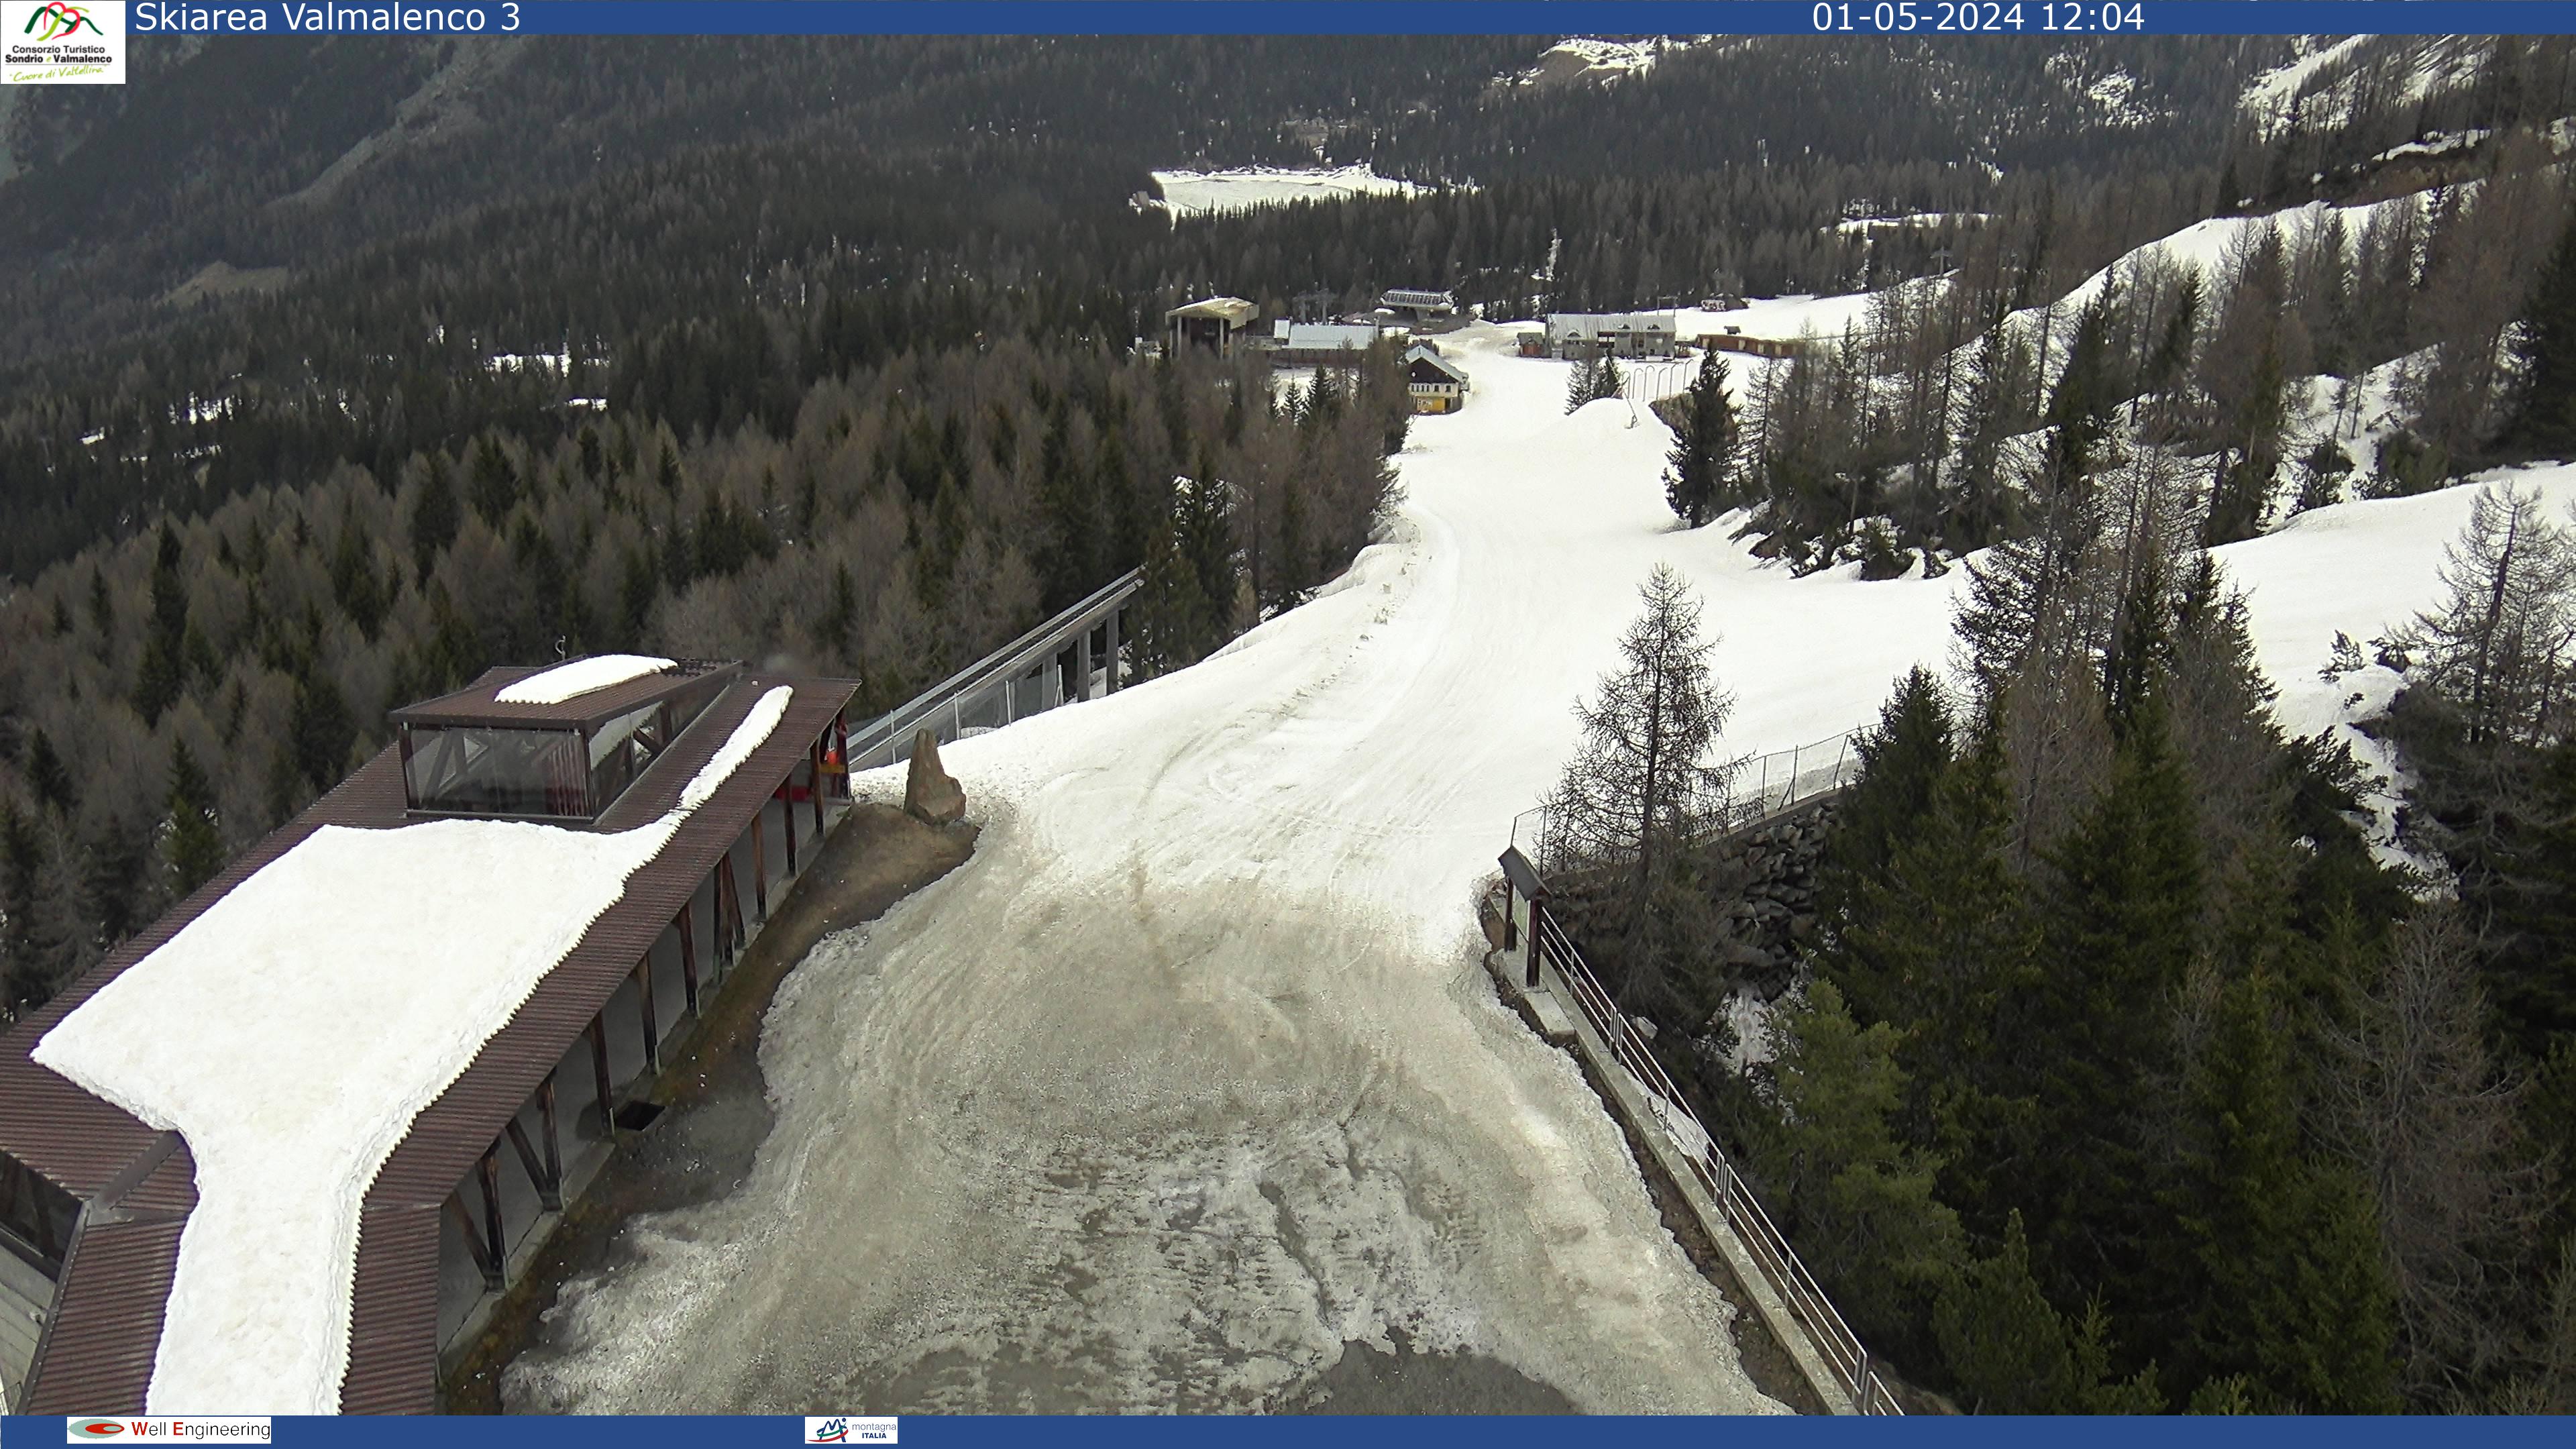 Webcam di Valmalenco Ski area: Ascensore inclinato